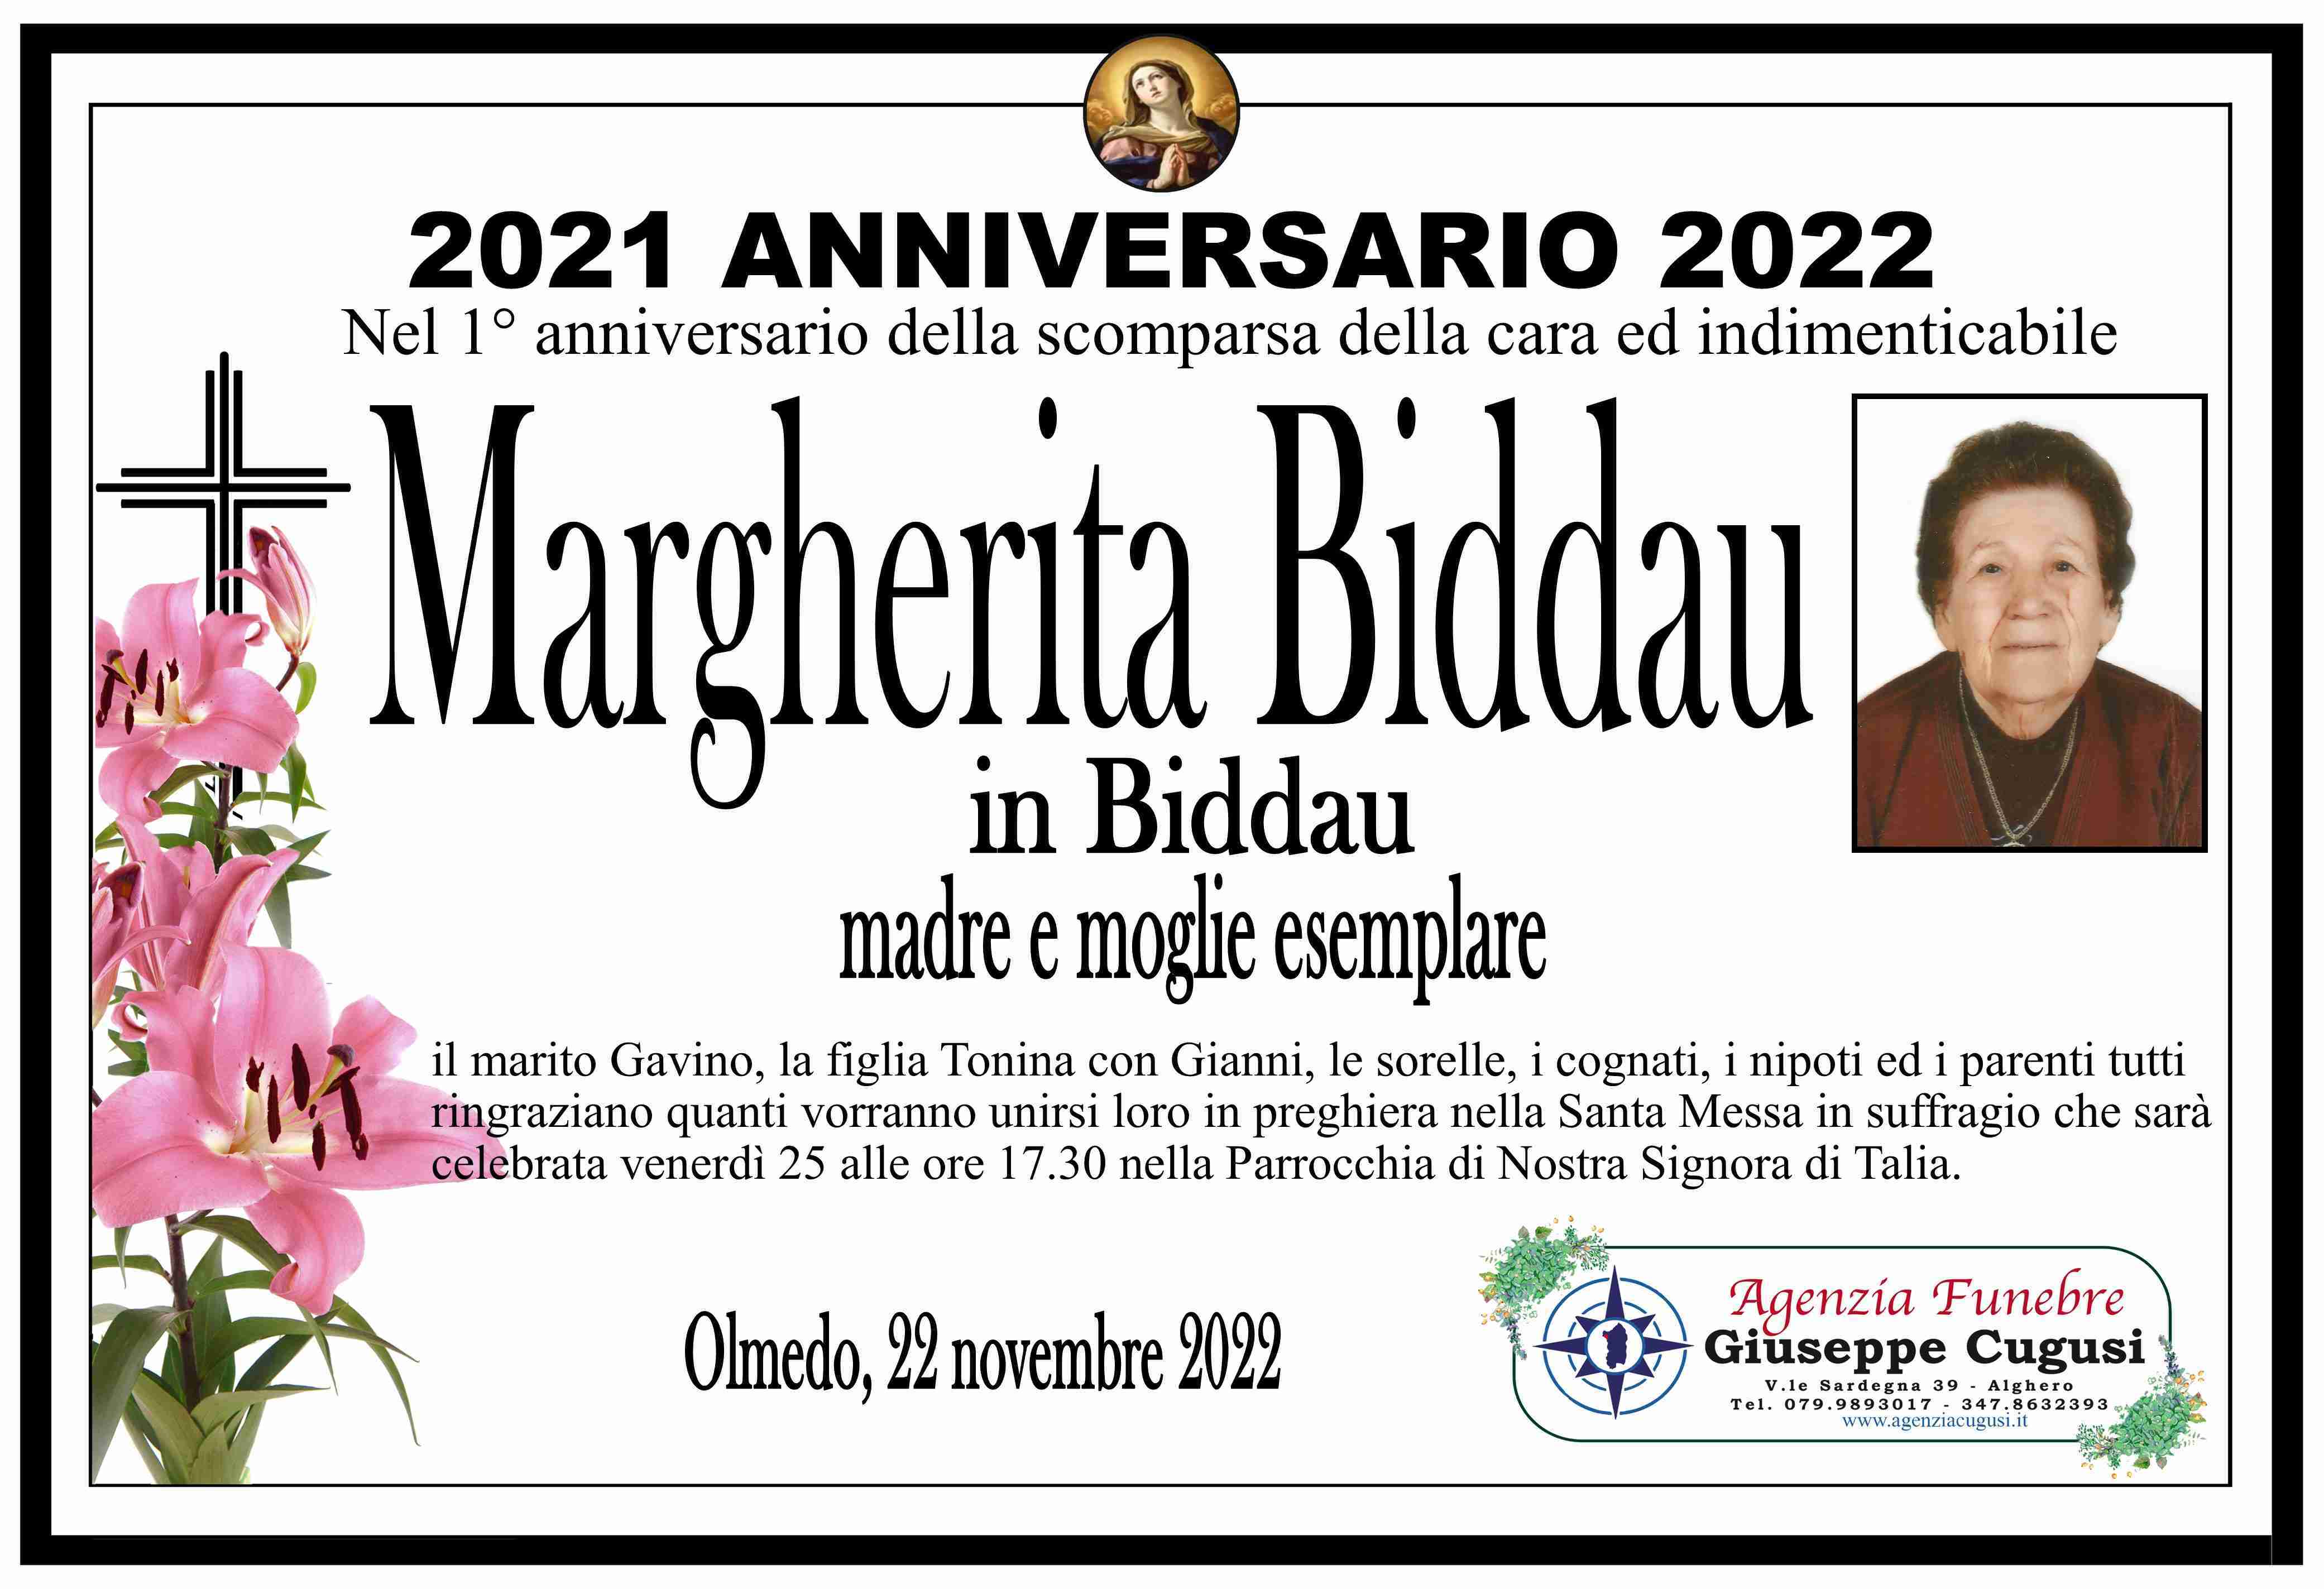 Margherita Biddau